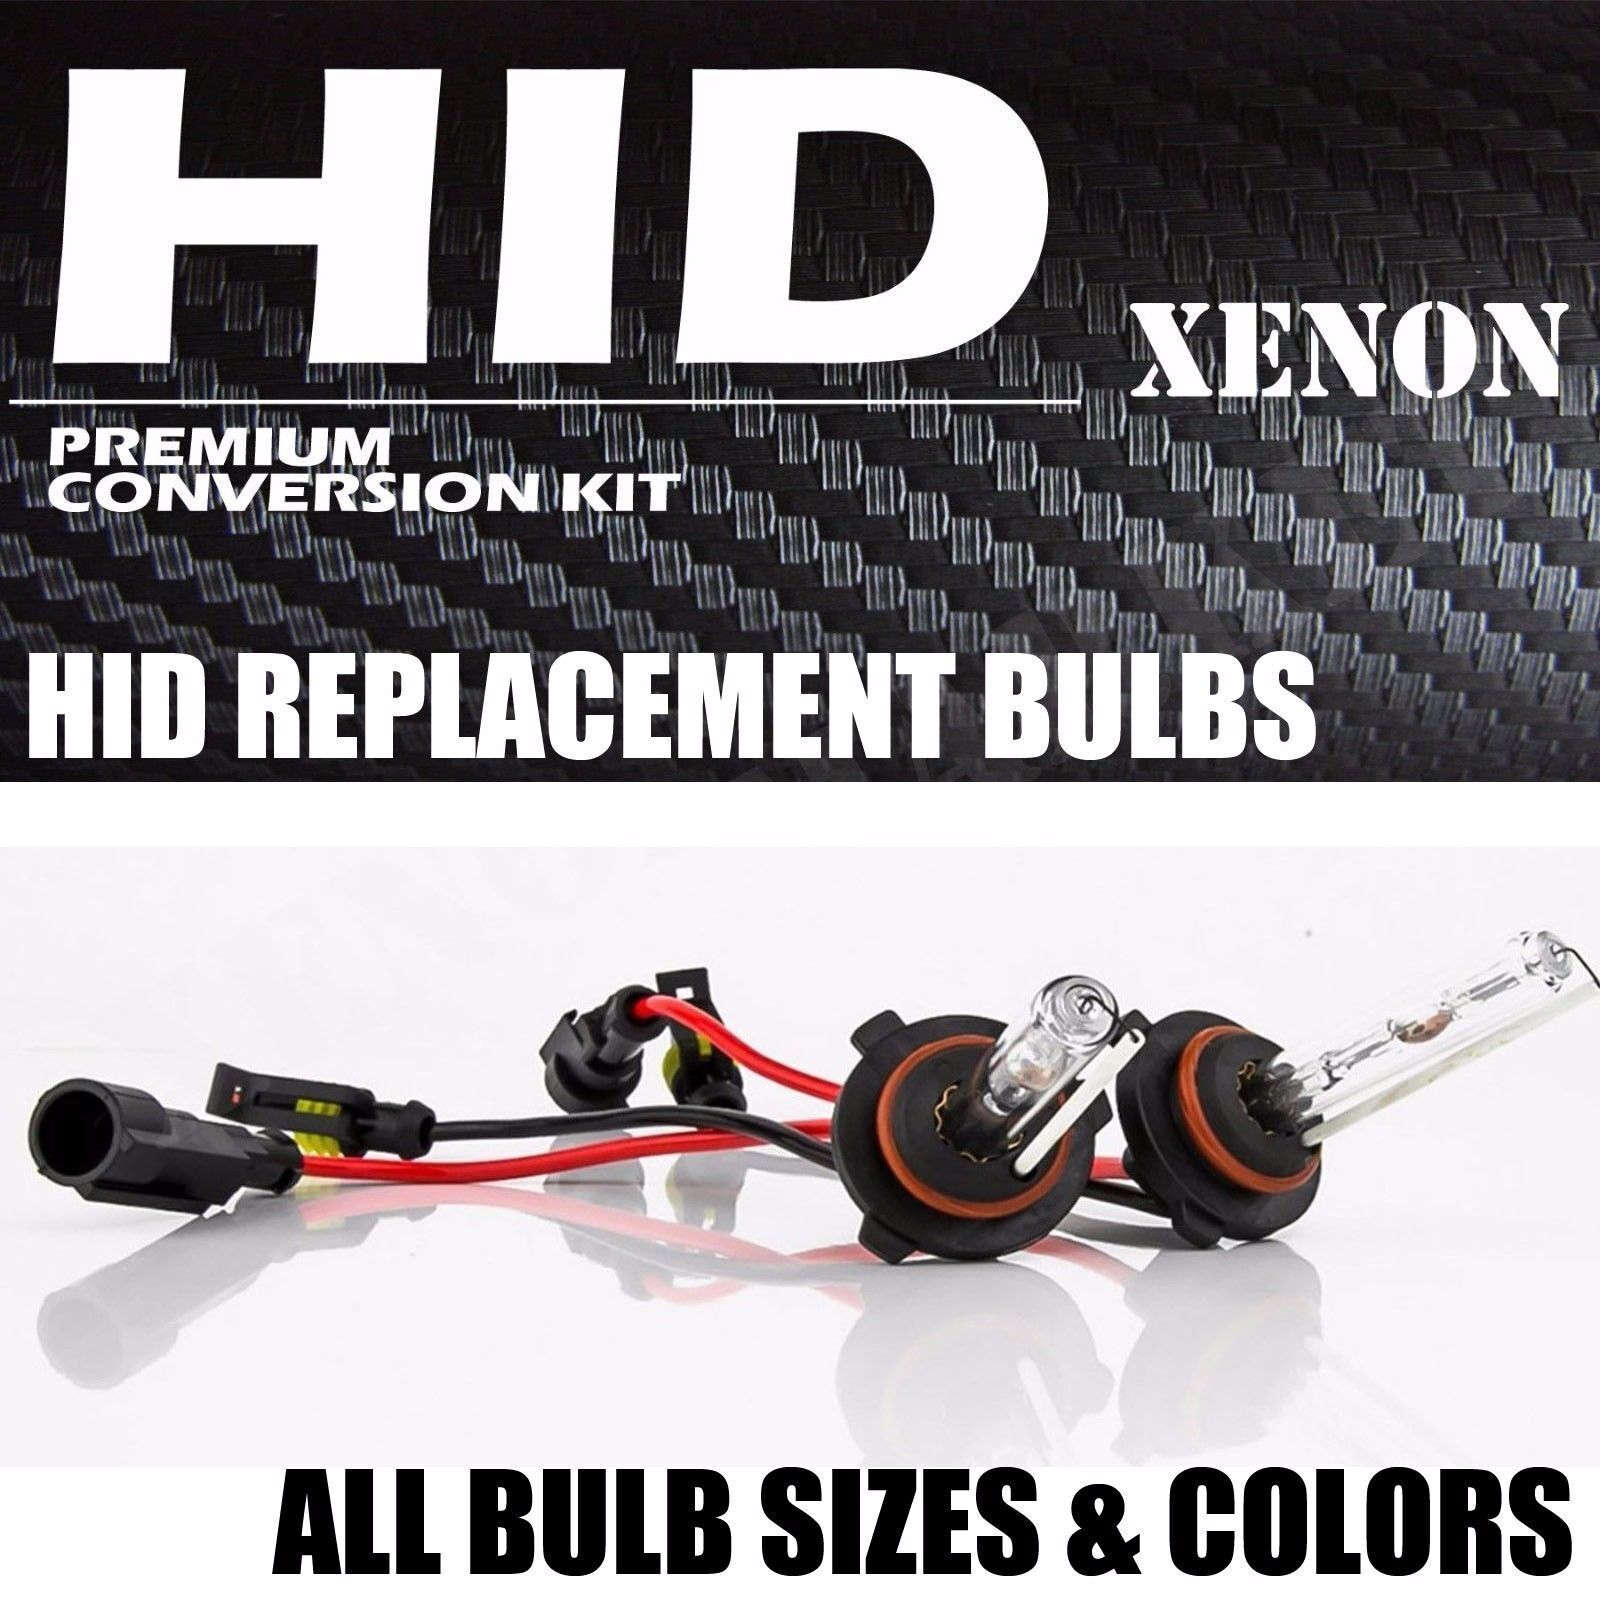 XENTEC 55W HID Kit Xenon Light Conversion H11 H4 9006 9005 H1 H7 H13 9004 9007